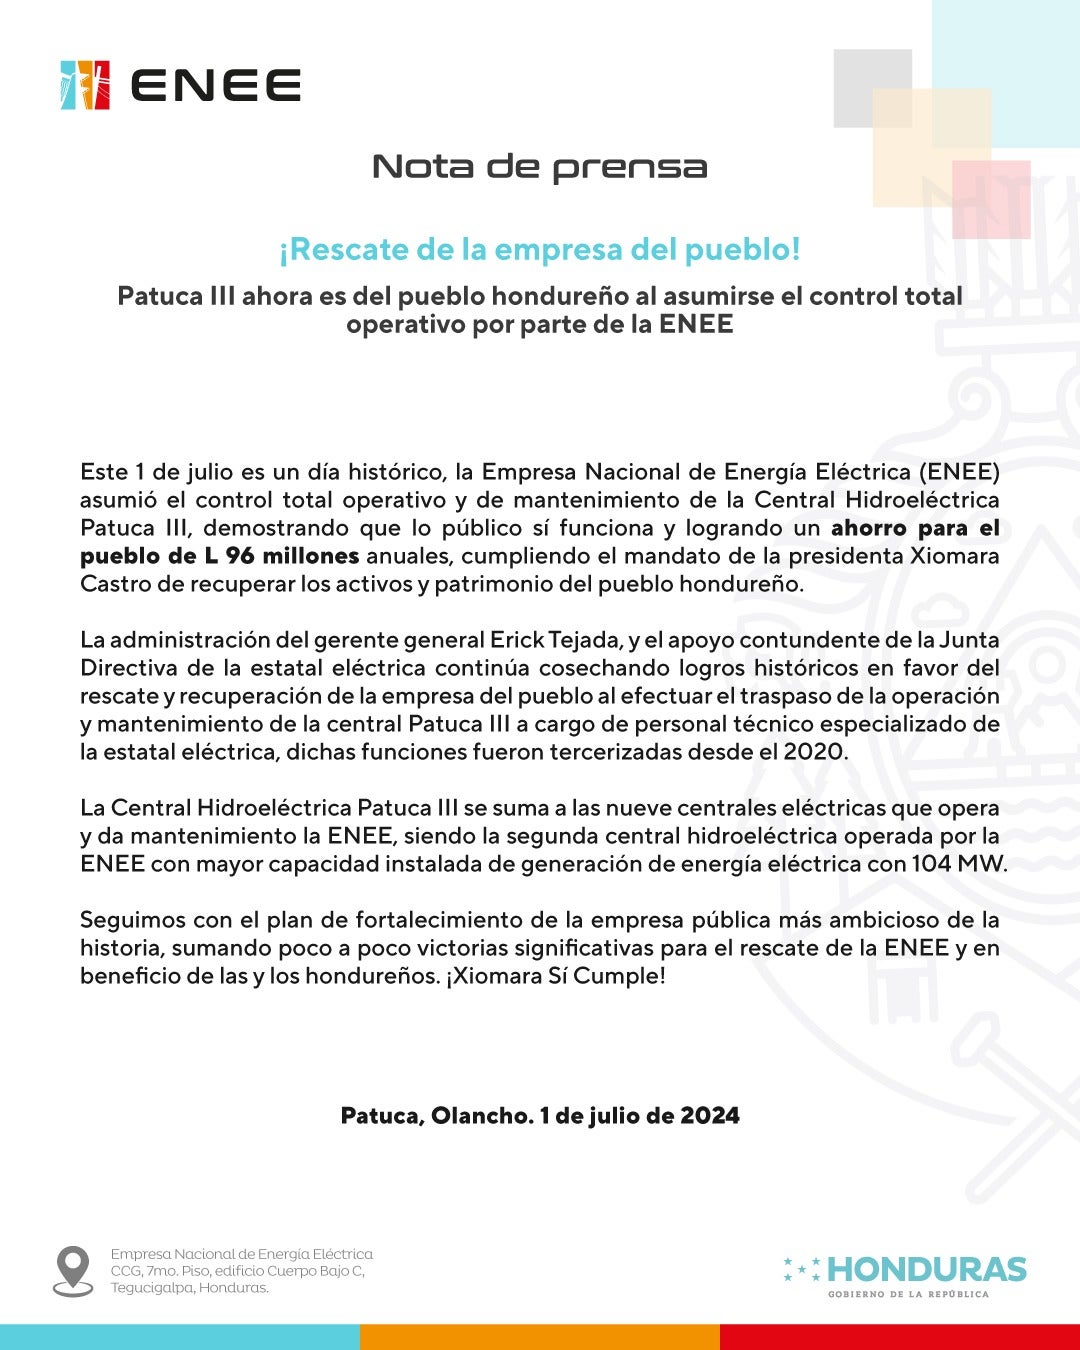 ENEE asume el control operativo de la hidroeléctrica Patuca III